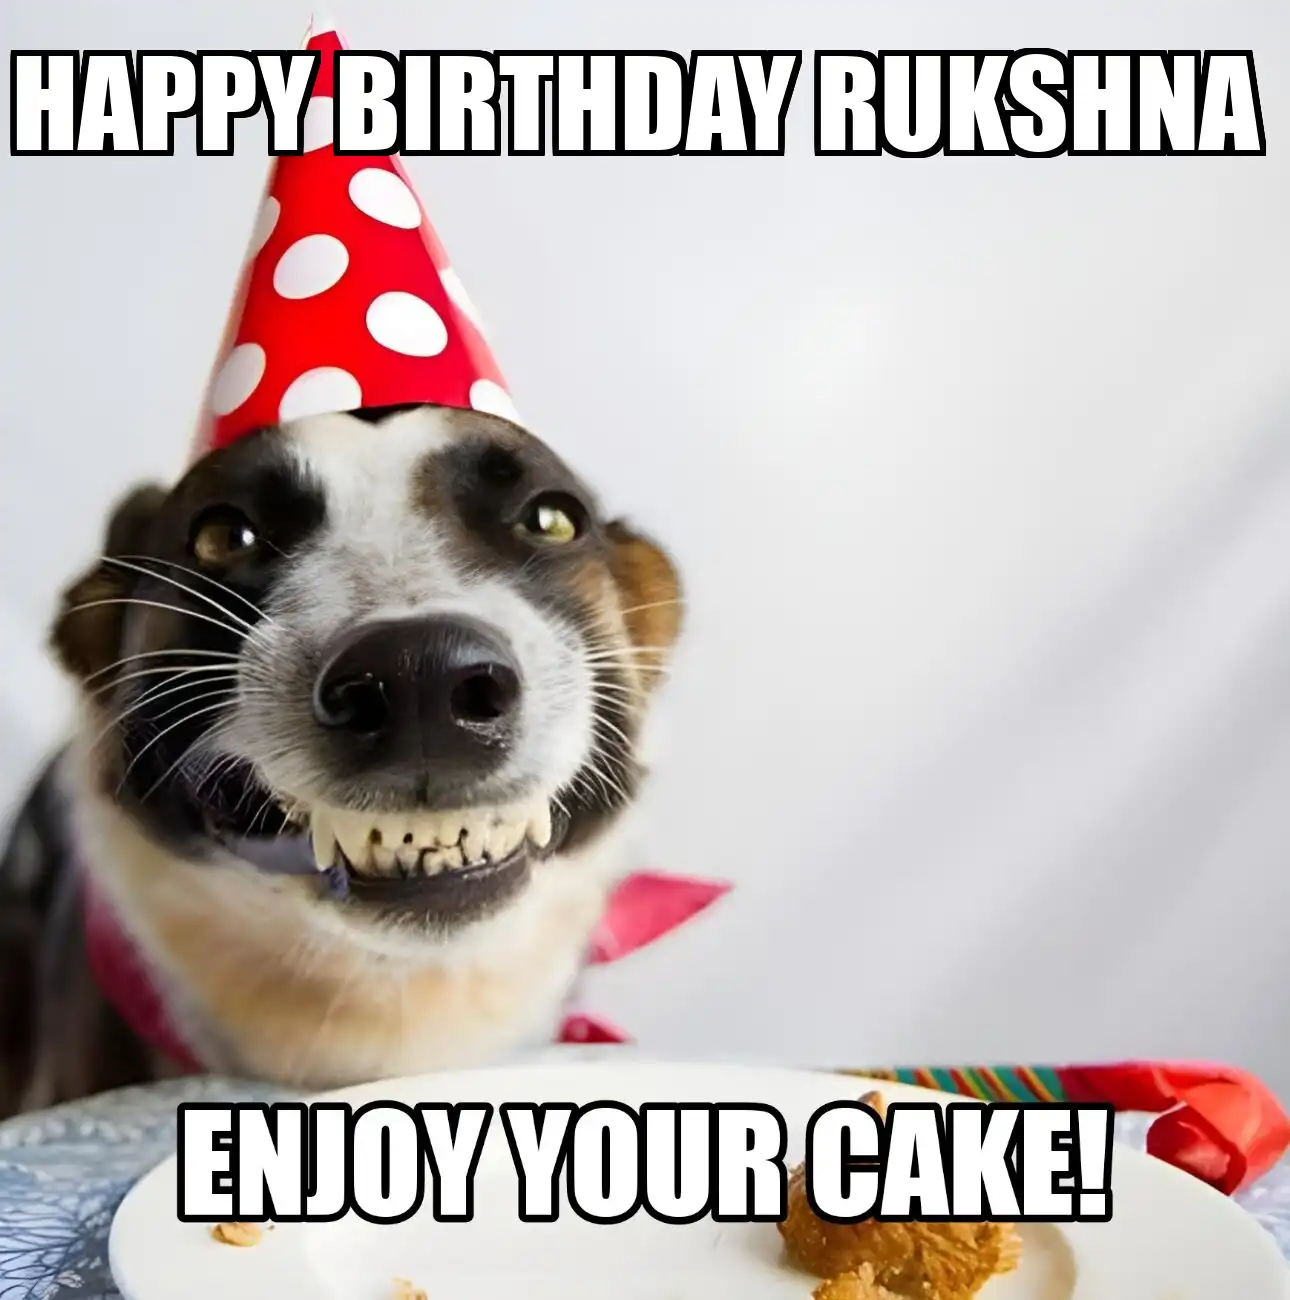 Happy Birthday Rukshna Enjoy Your Cake Dog Meme